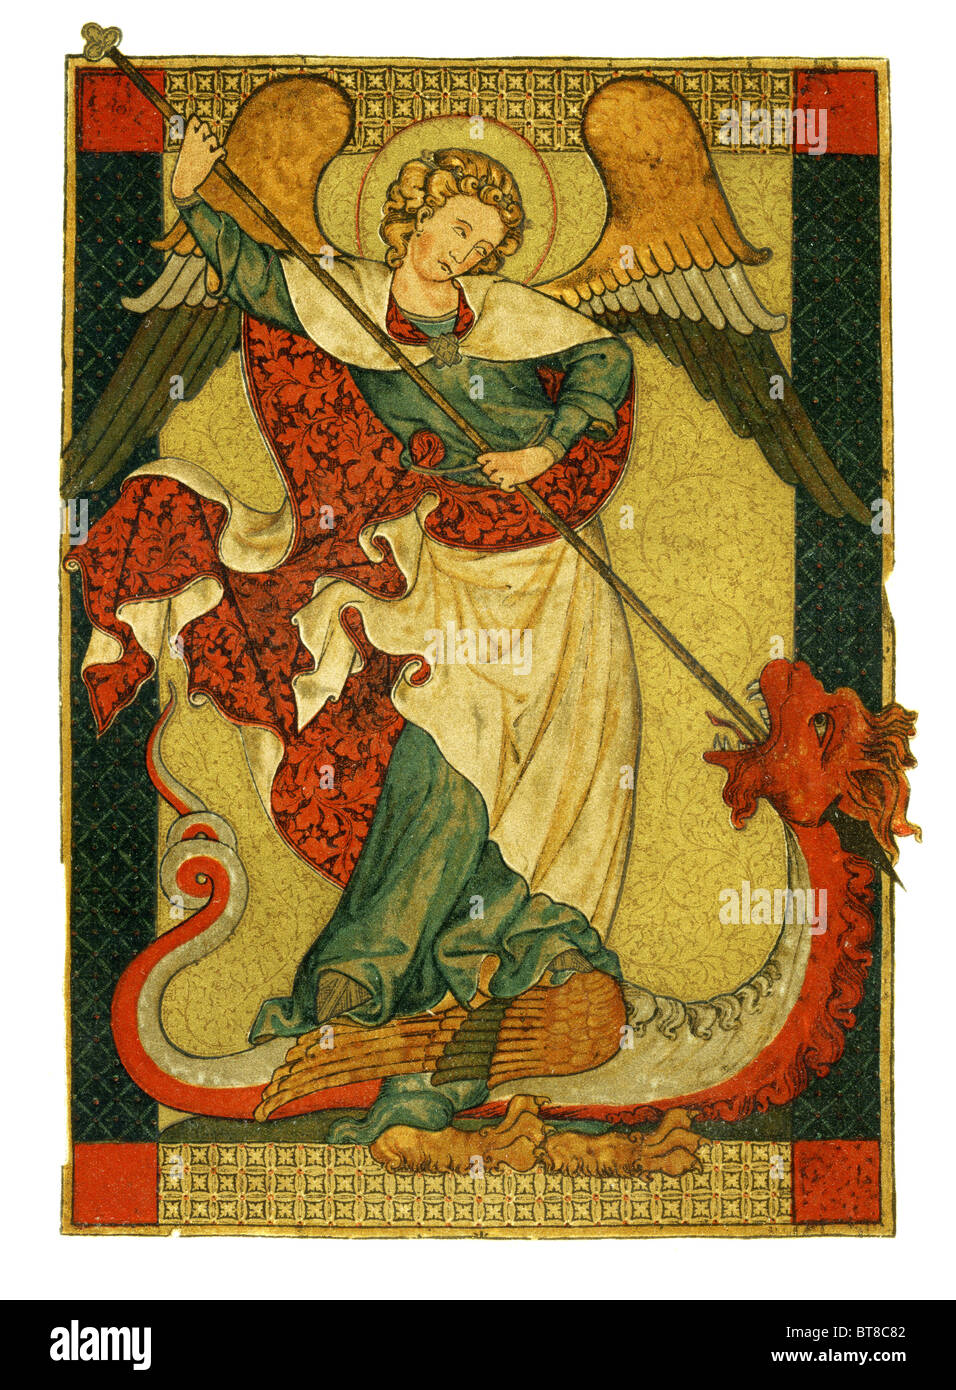 Archangel Saint Michael  trampling Satan, Lucifer, the Devil. Woodblock print 1885 edition Geschichte der Deutschen Kunst  v.1 Stock Photo